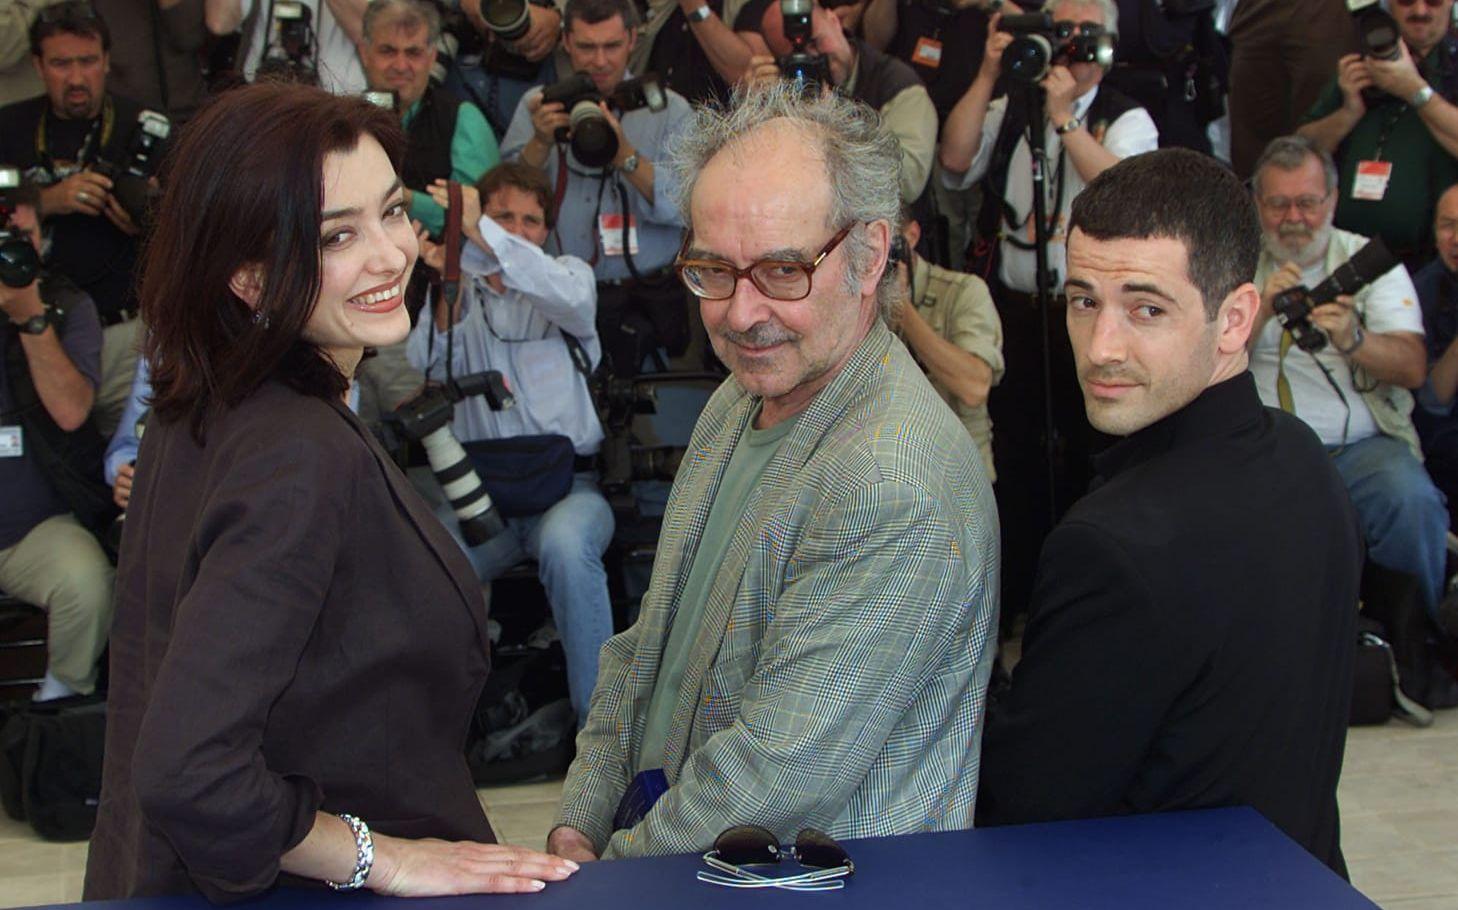 Godard var aktiv som regissör fram till 2010-talet. Här med skådespelarna Cecile Camp och Bruno Putzulu under filmfestivalen i Cannes 2001, då filmen "Eloge de l'Amour" visades.